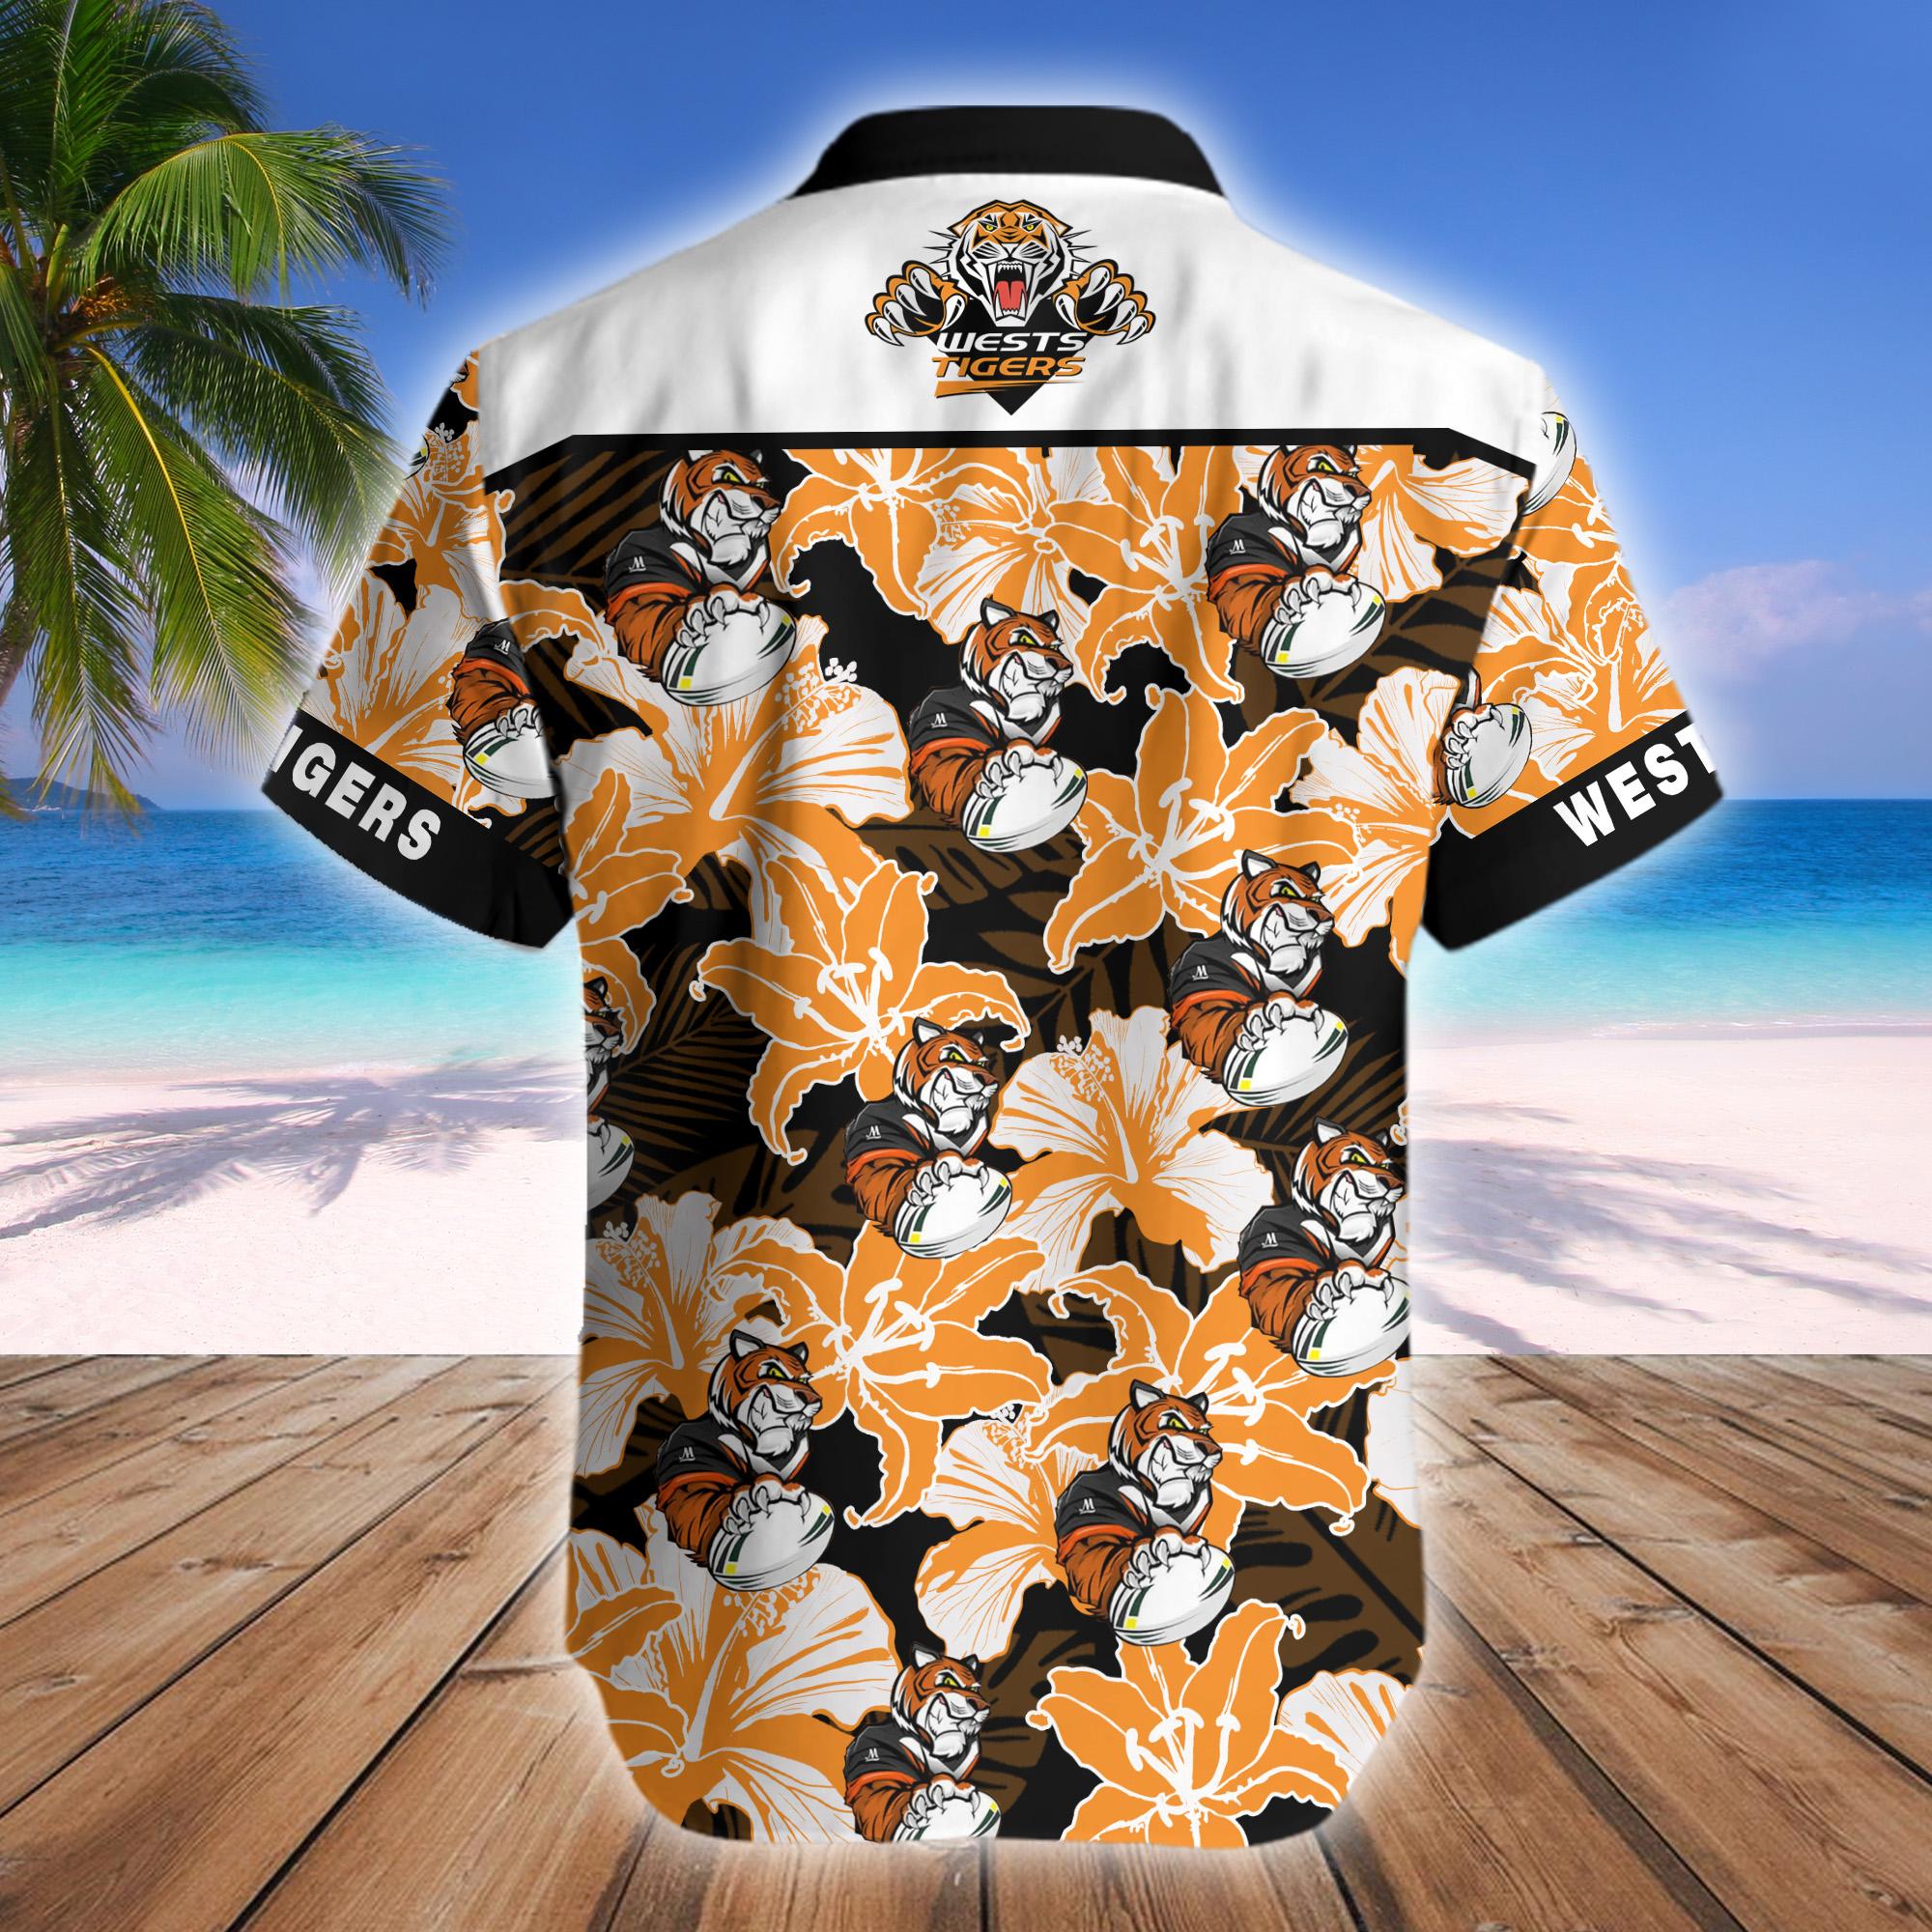 Wests Tigers Mascot NRL Hawaiian Shirt